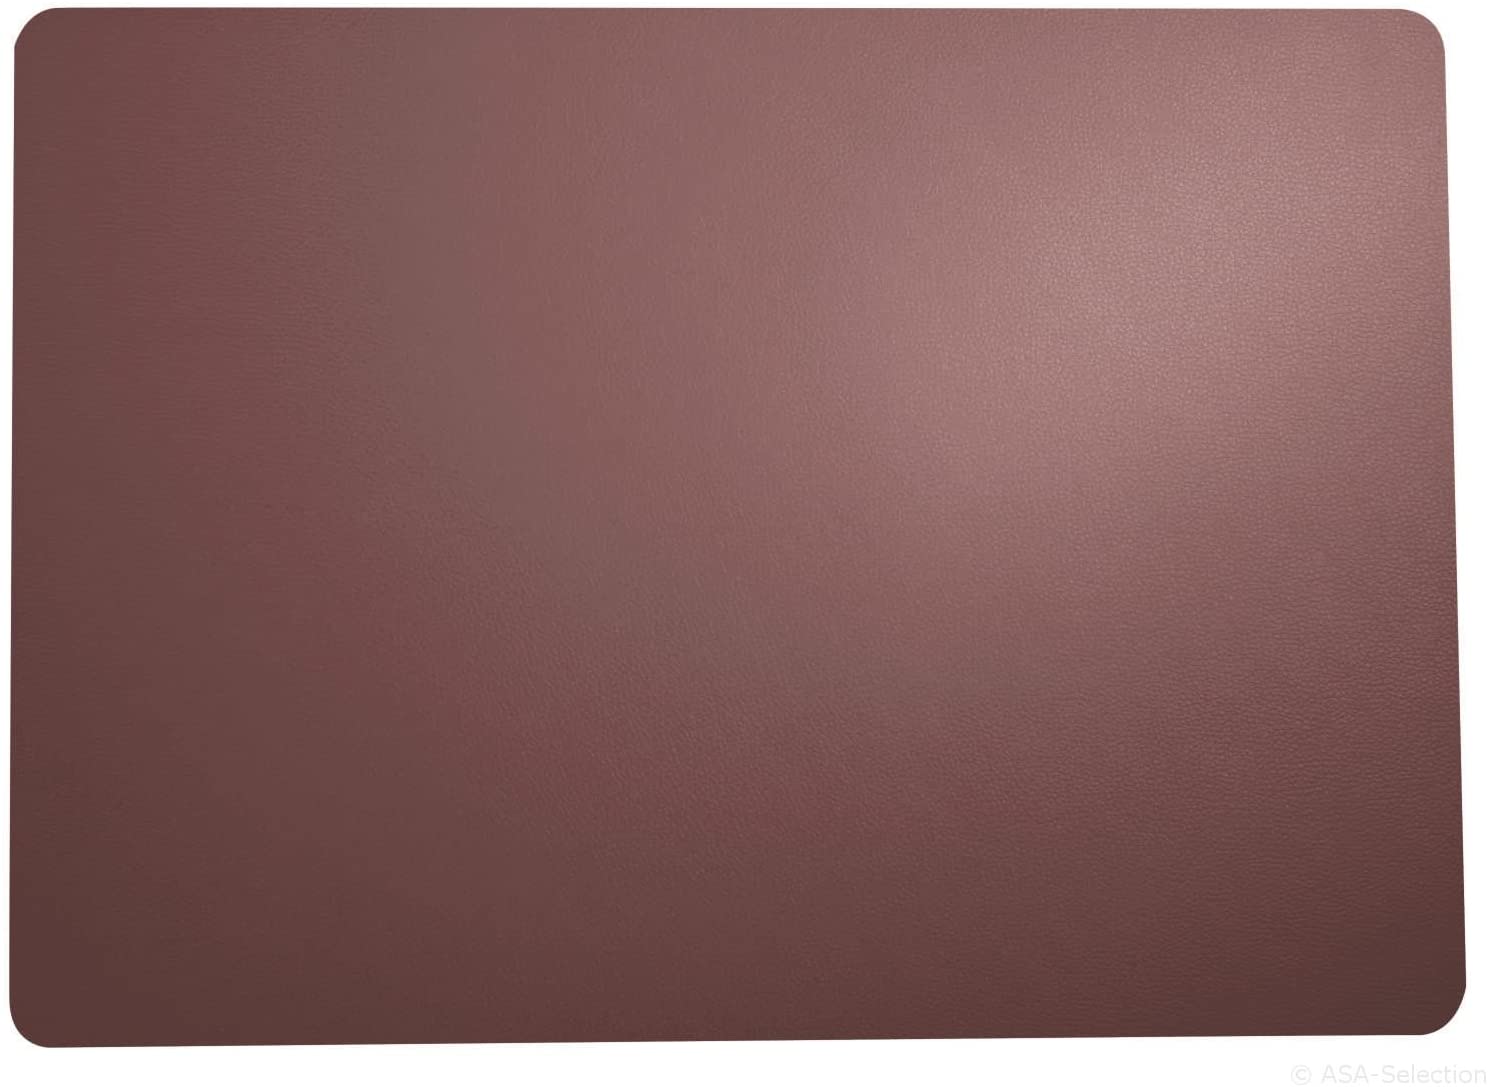 ASA AmazonDeaccessory Leather-look, Faux Leather Placemat - 1 Unit, 46 x 33 cm